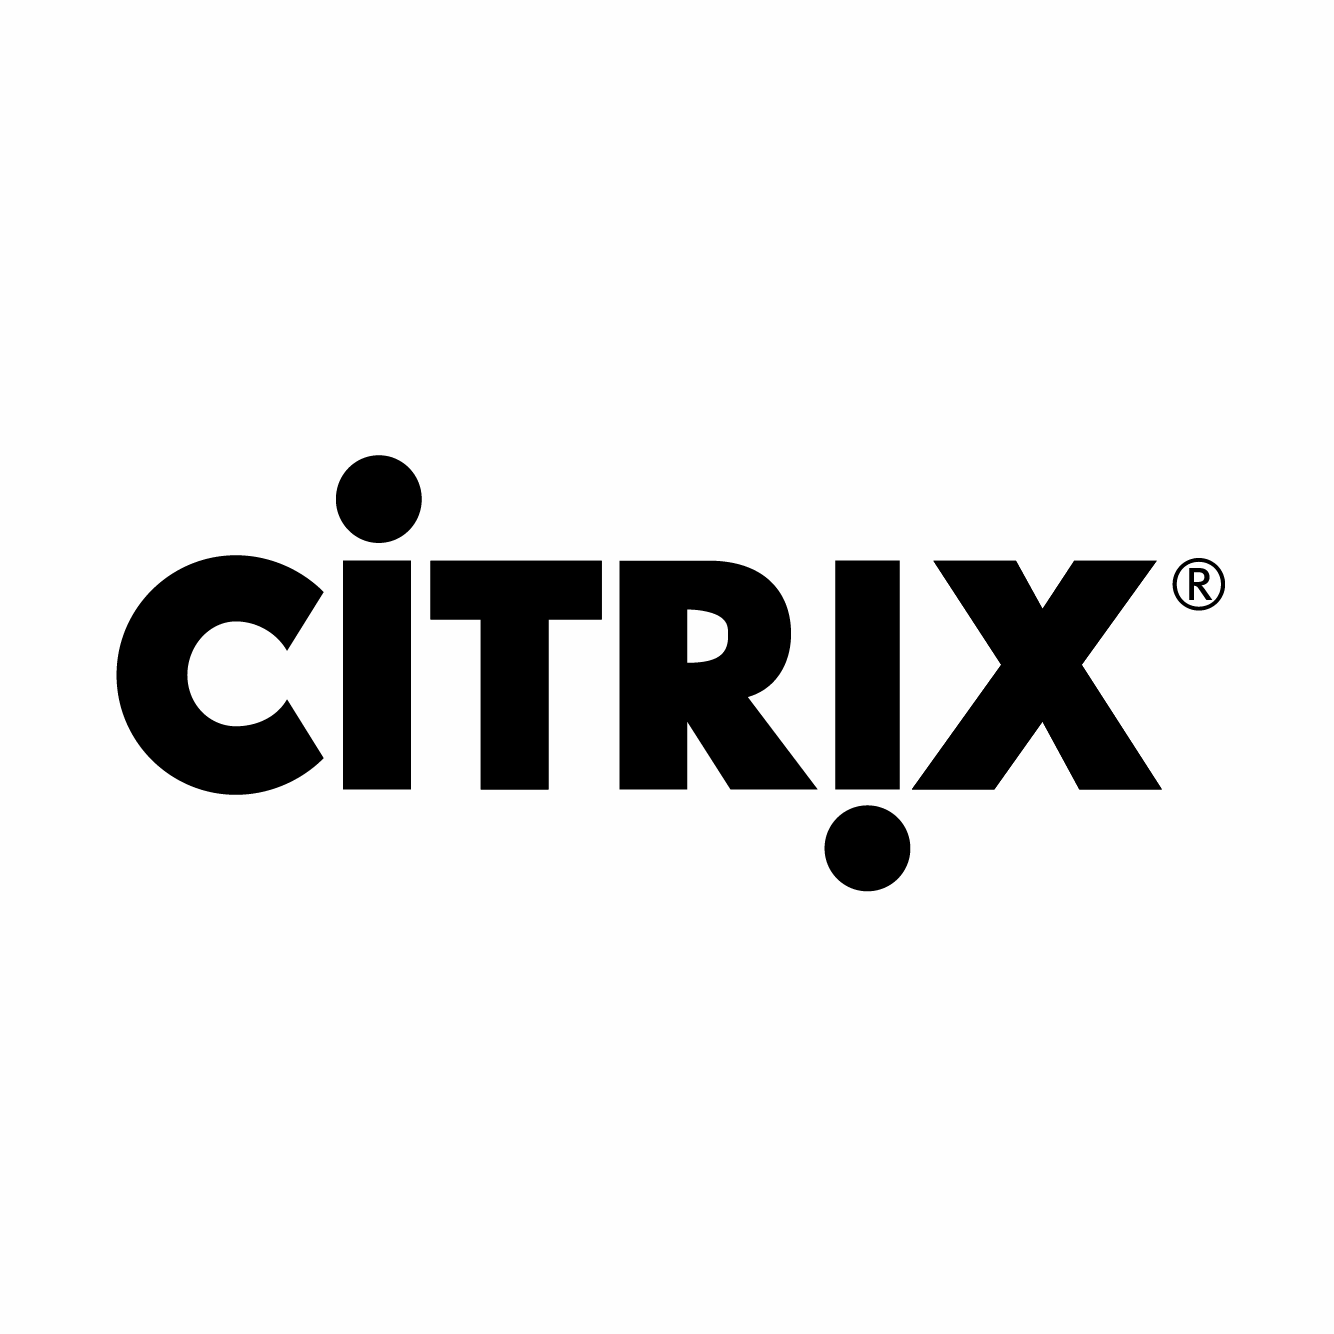 https://securetech.ae/wp-content/uploads/2019/02/12.CITRIX.png